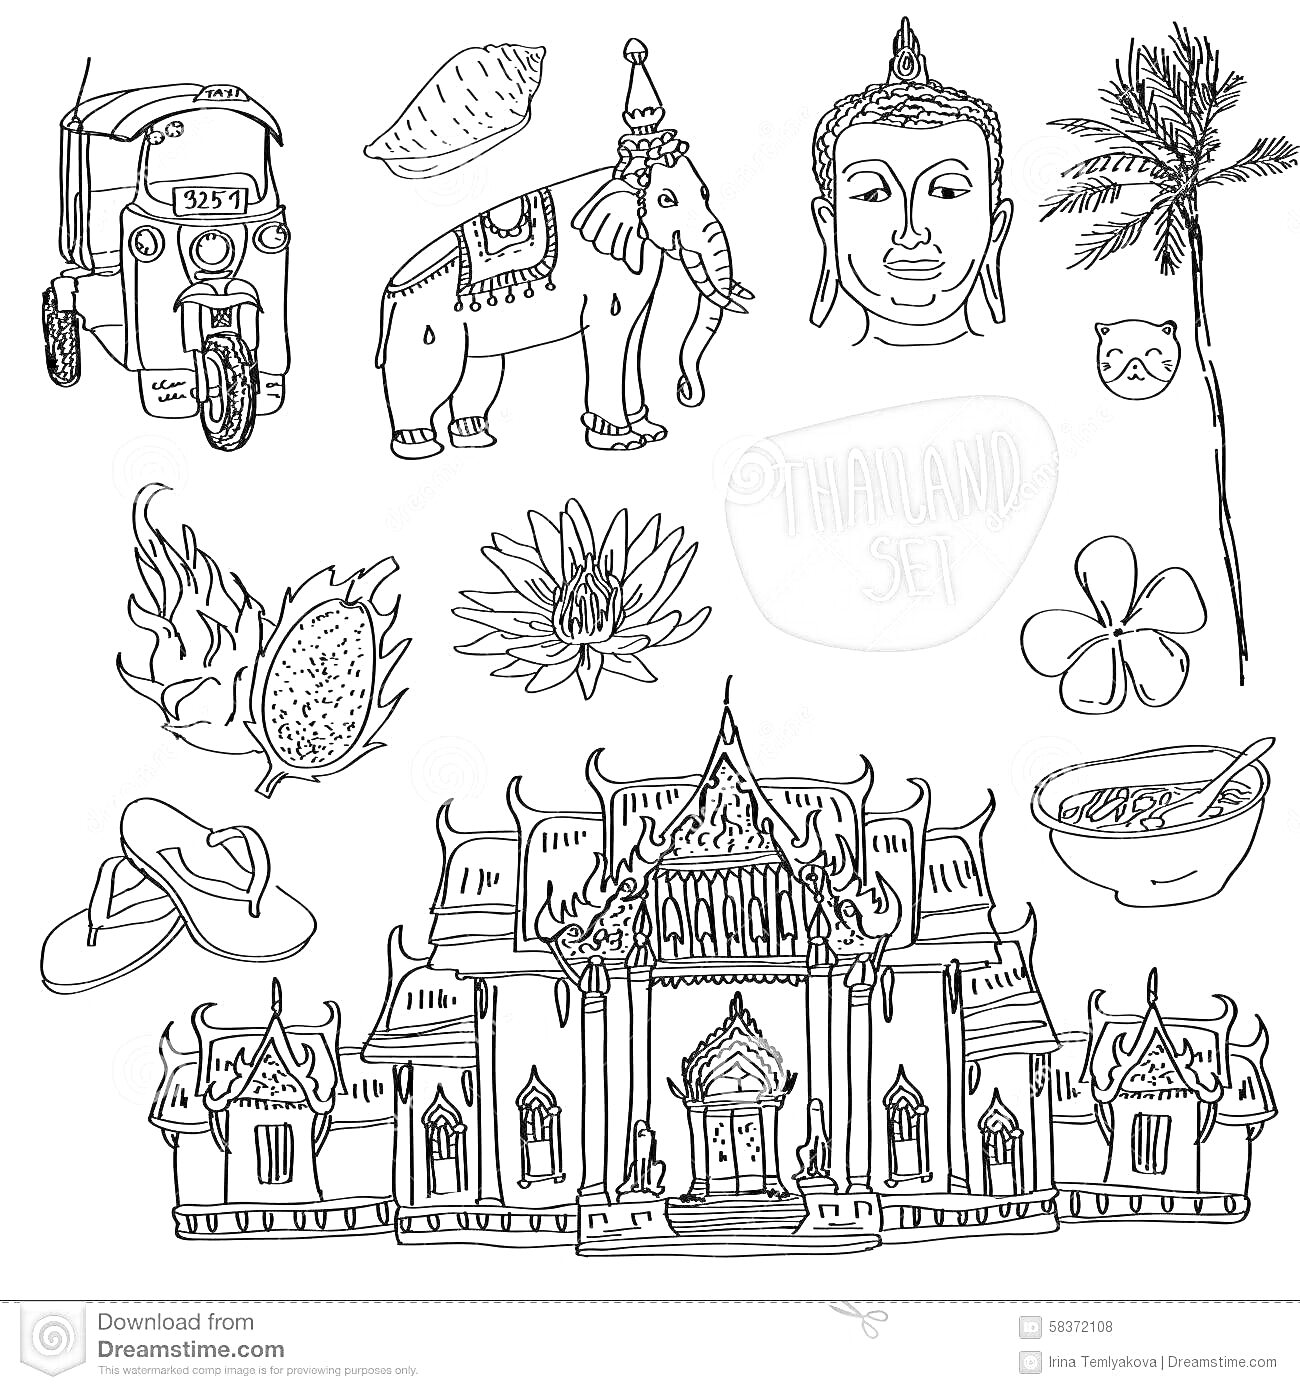 Раскраска Храм, тук-тук, ананас, слон с украшениями, голова Будды, пальма, фрукт дракона, цветок лотоса, кокос, орхидея, рисовая миска, шлепанцы